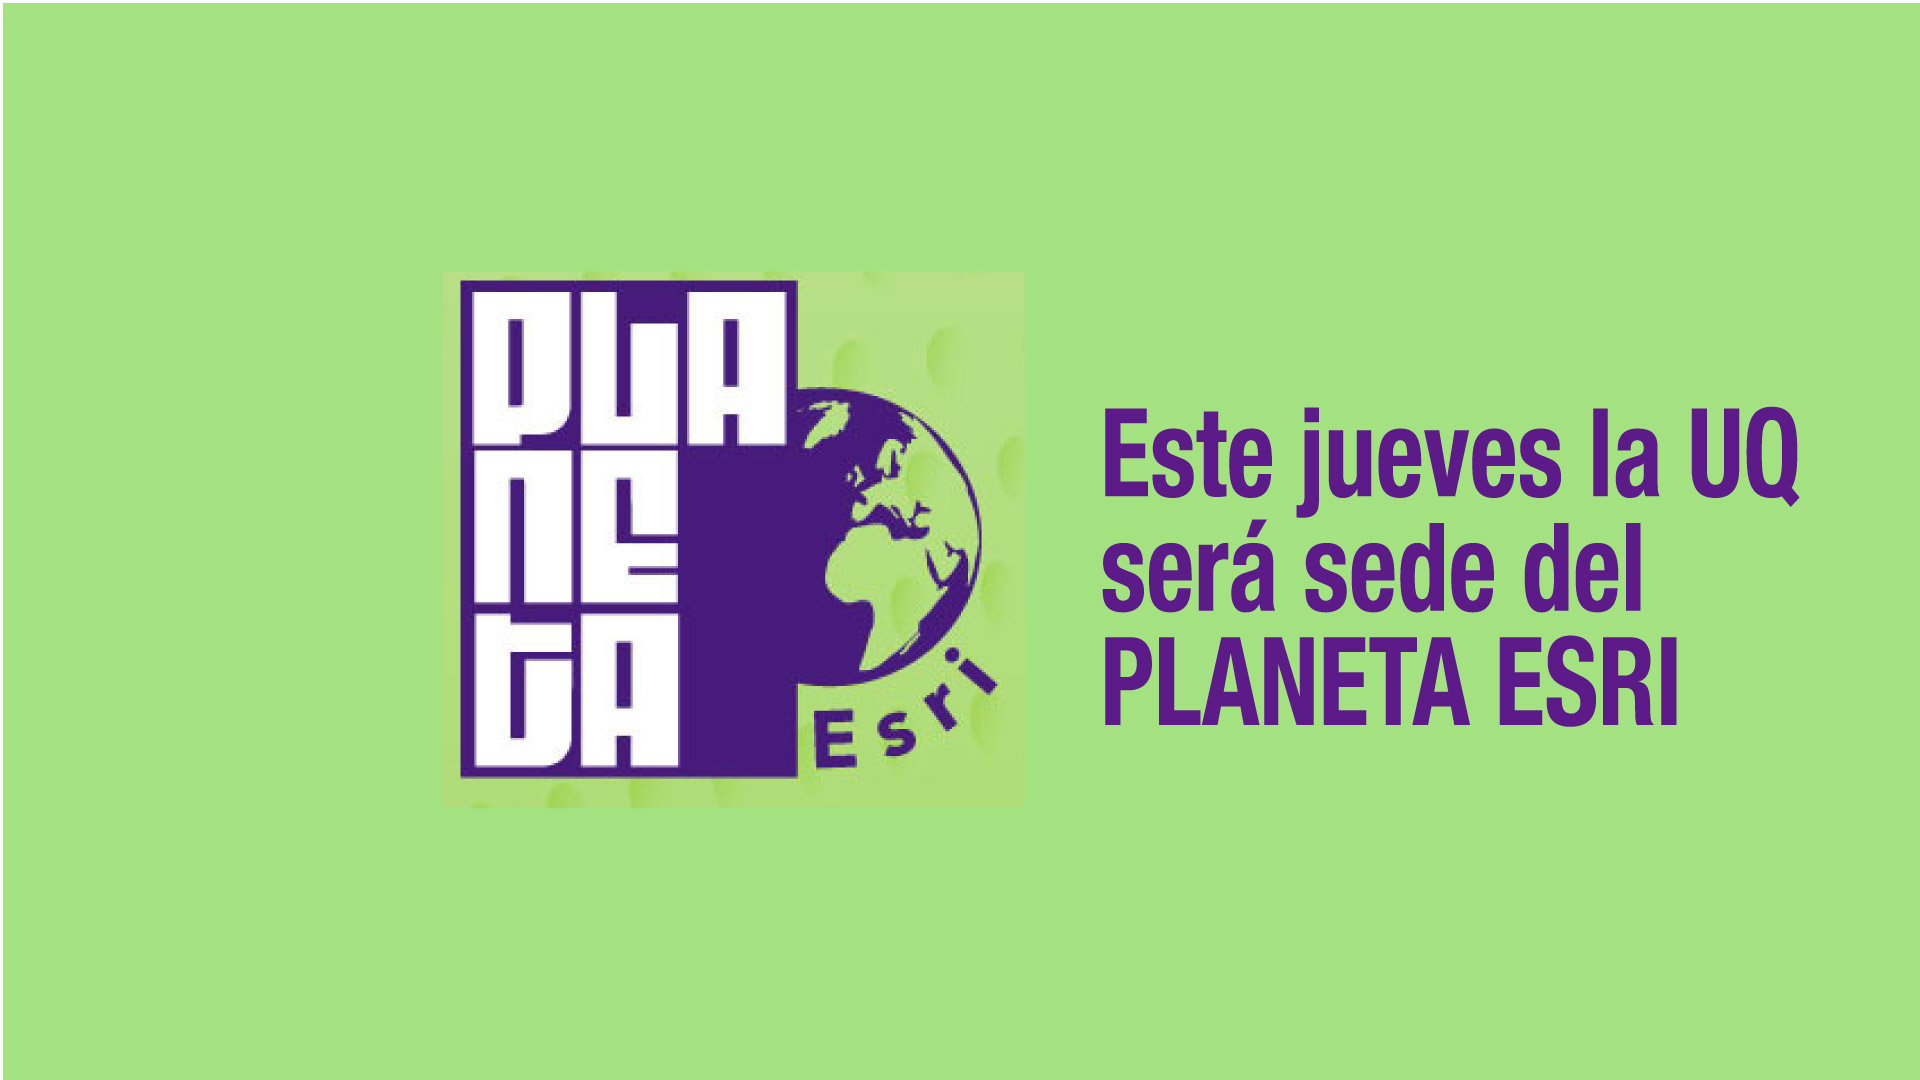 La UQ será epicentro del evento Planeta Esri Colombia